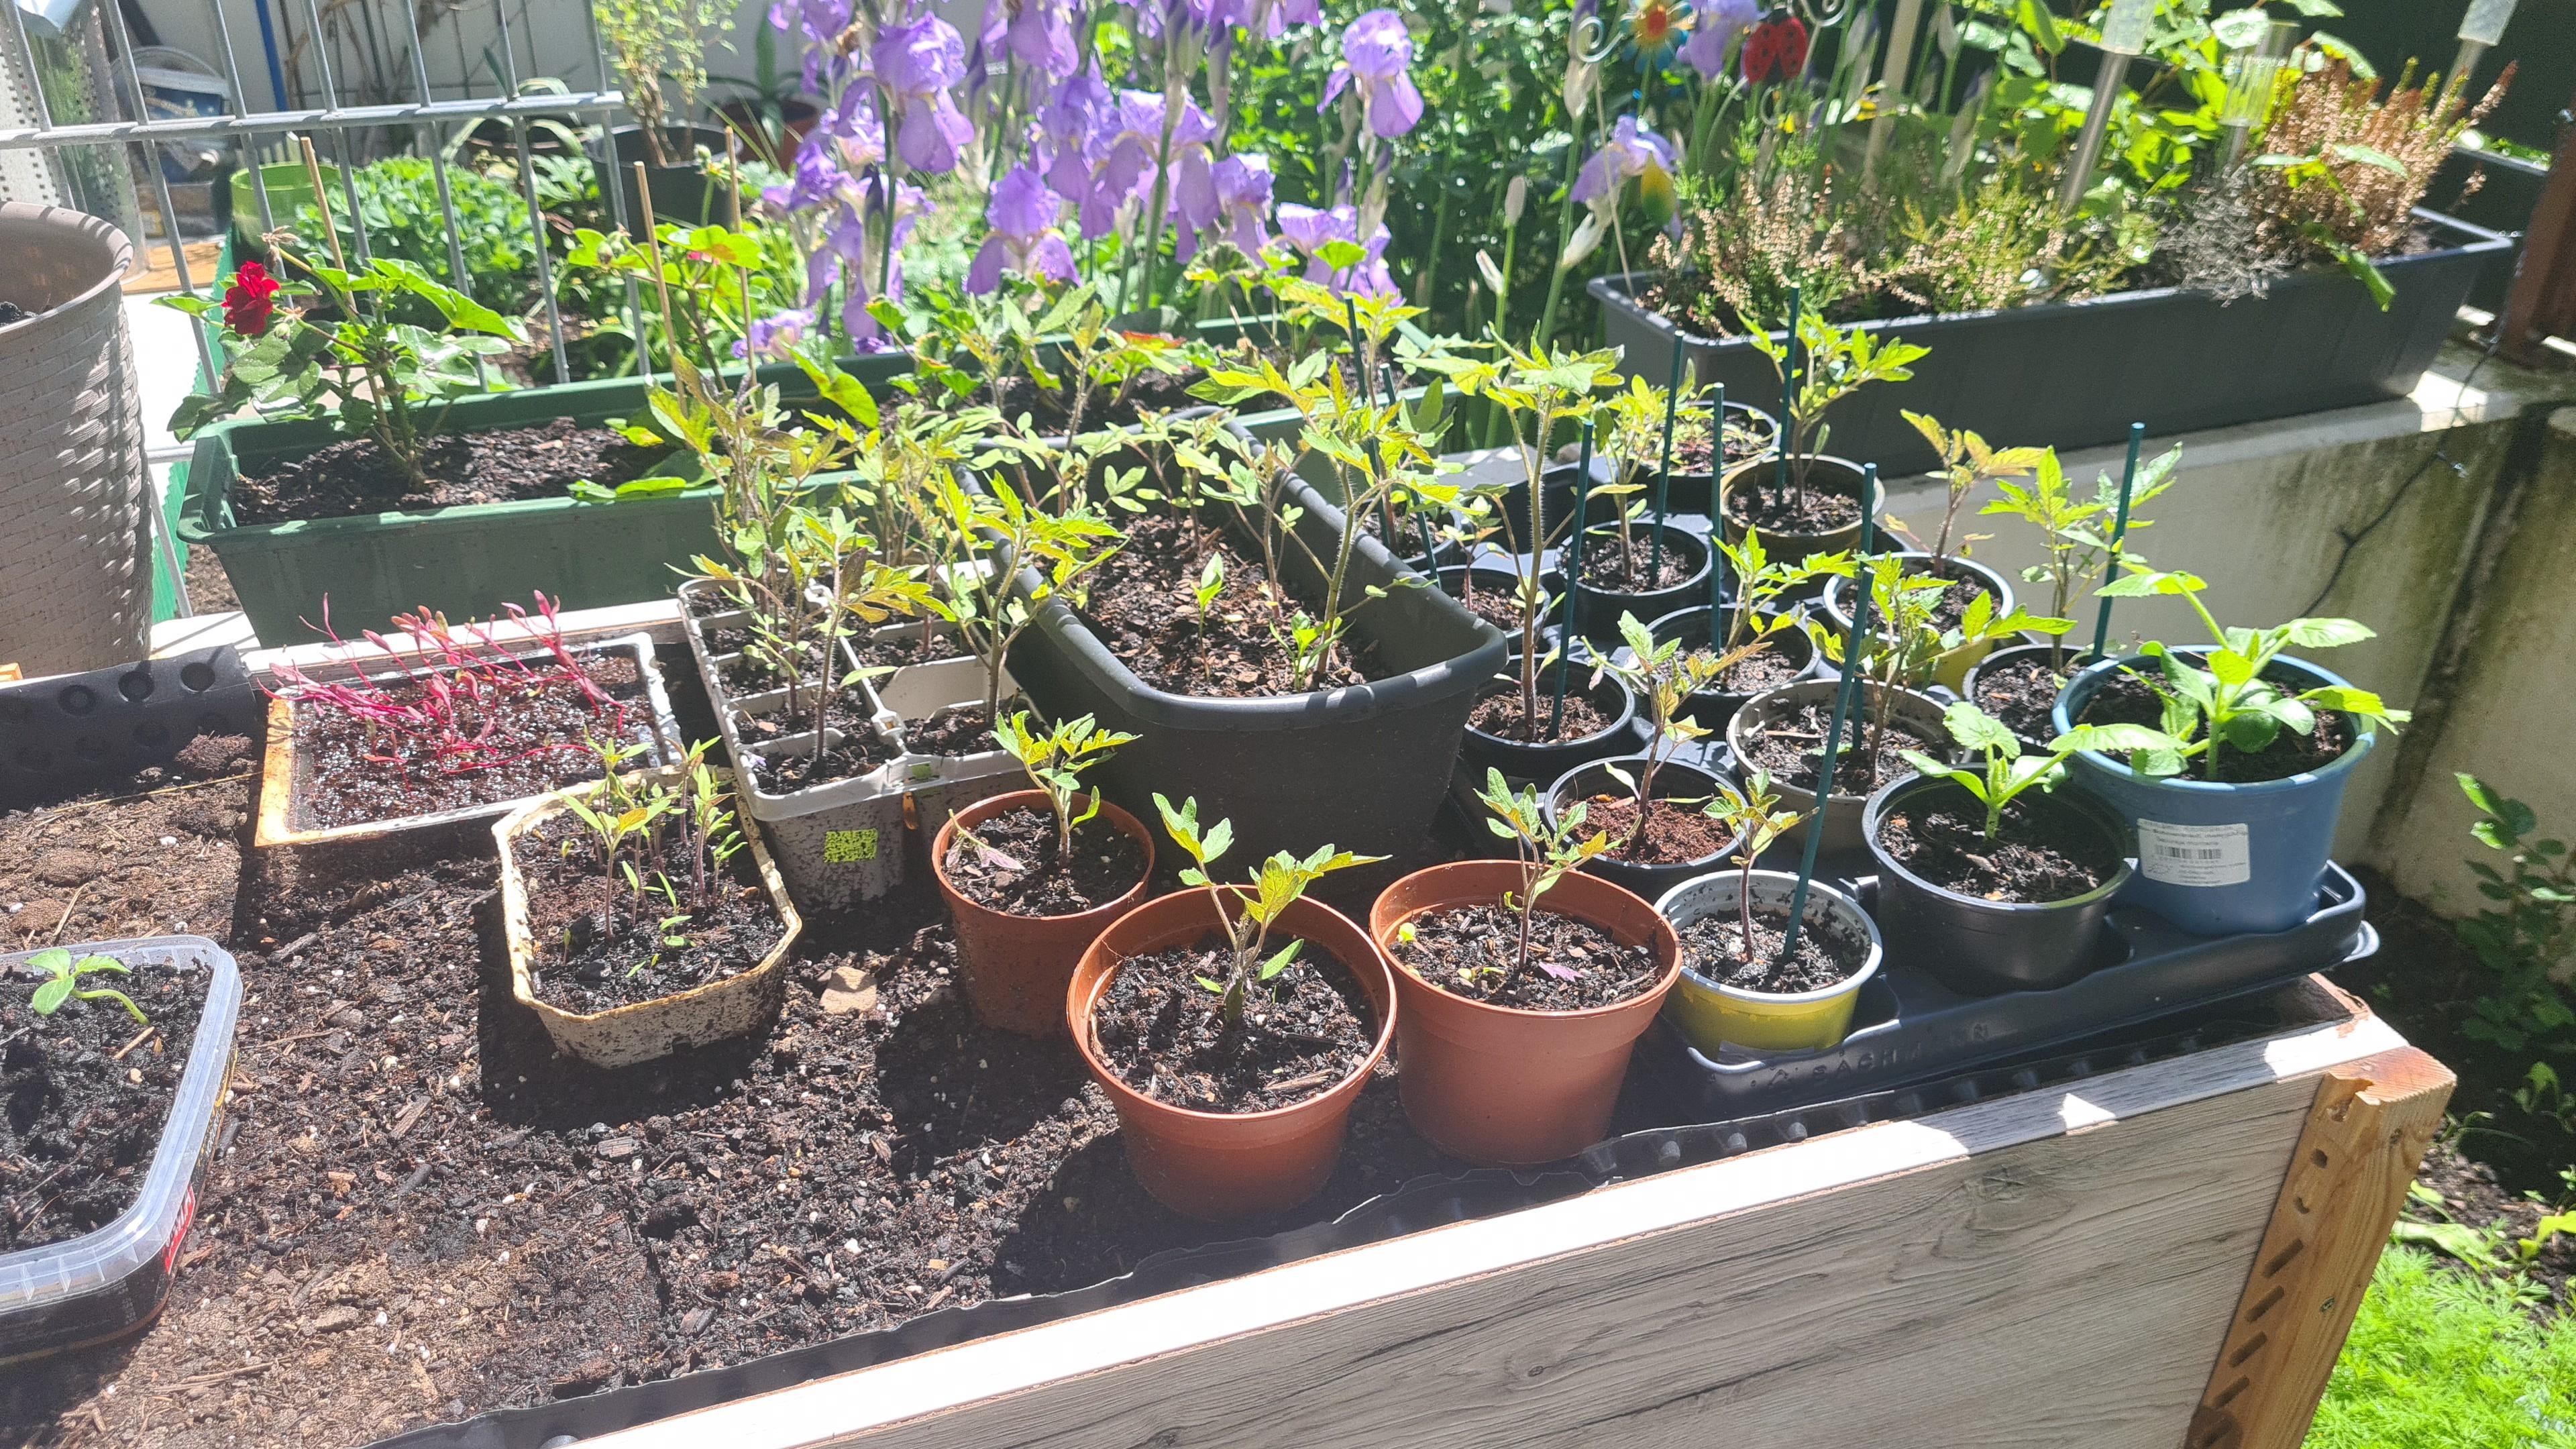 Mein Garten :) 😀
#garten #Gärten #tomaten #mini #pflanzen